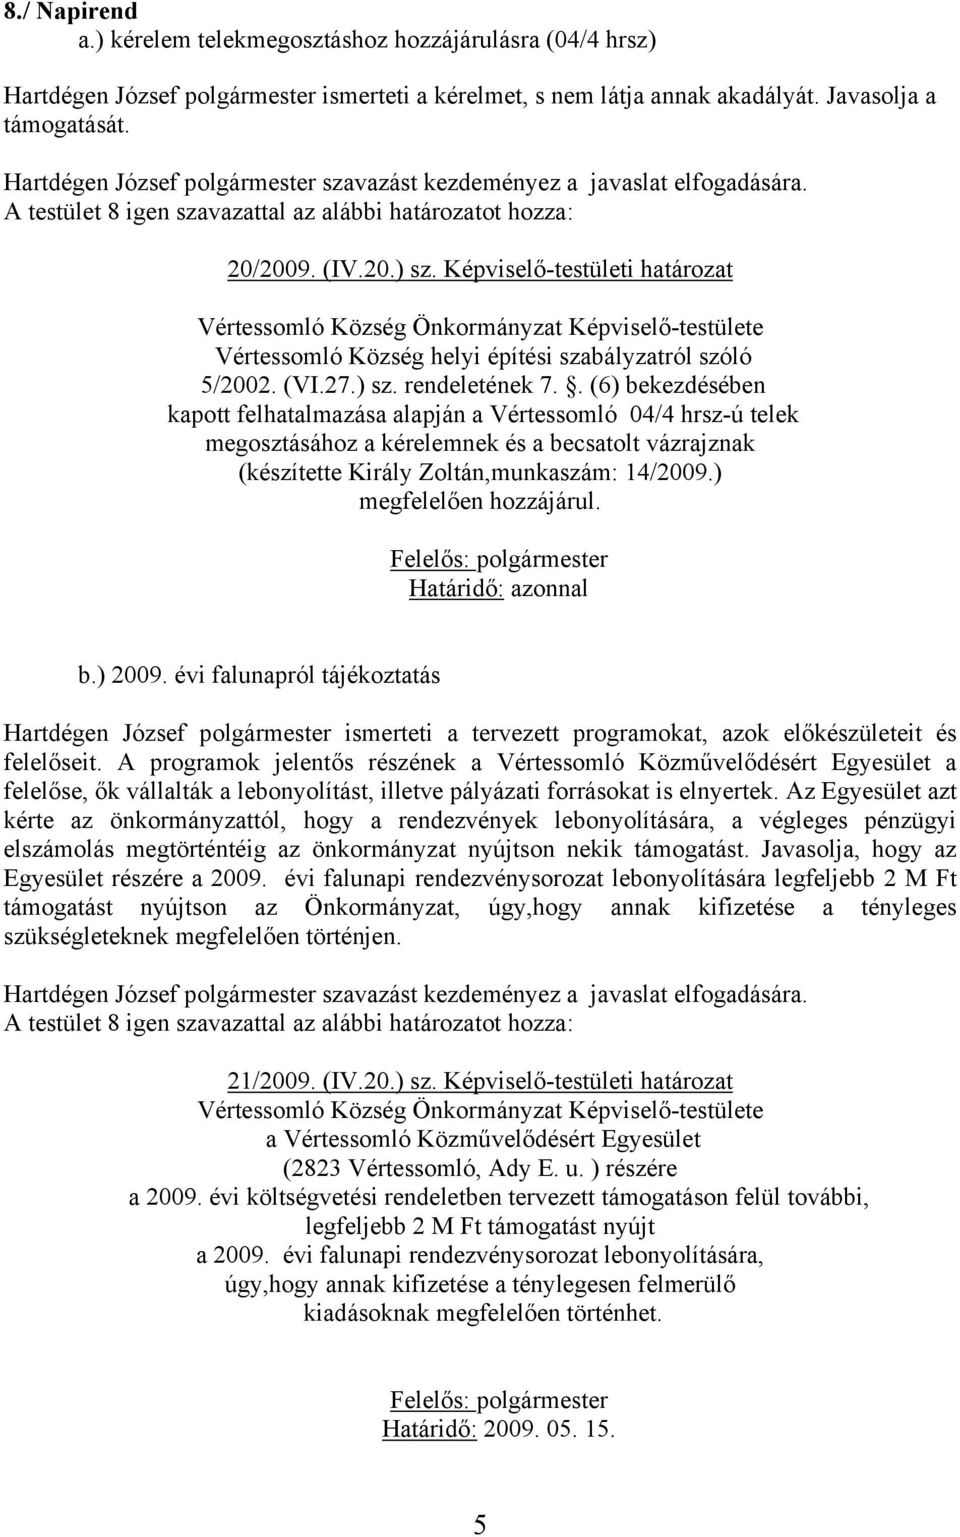 . (6) bekezdésében kapott felhatalmazása alapján a Vértessomló 04/4 hrsz-ú telek megosztásához a kérelemnek és a becsatolt vázrajznak (készítette Király Zoltán,munkaszám: 14/2009.